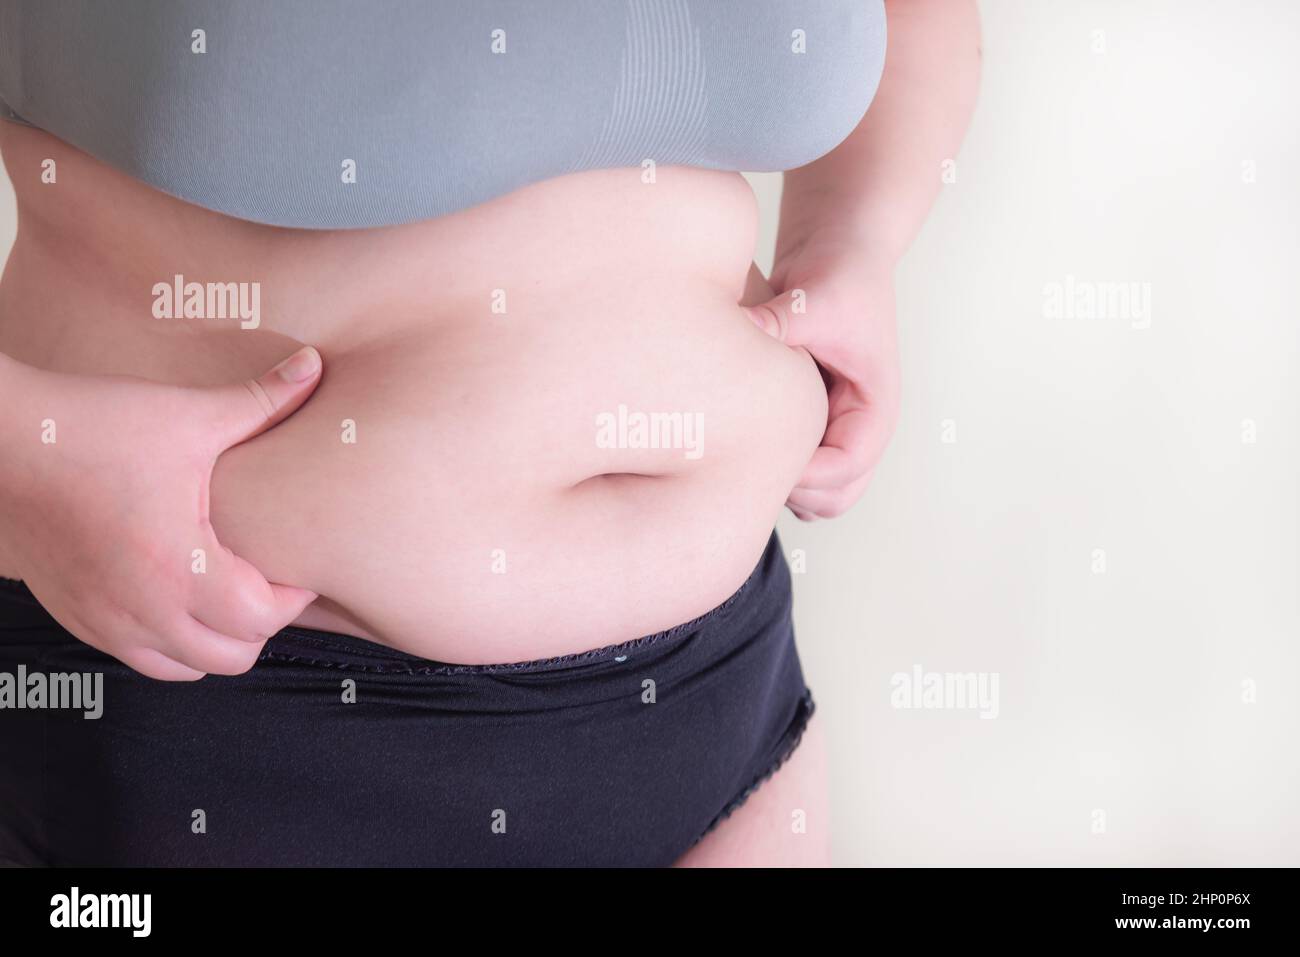 Fat Frauen., Bauch Frauen übergewichtig, Formen Sie sich gesunde  Bauchmuskeln und Ernährung Lebensstil zu reduzieren Bauch Konzept  Stockfotografie - Alamy